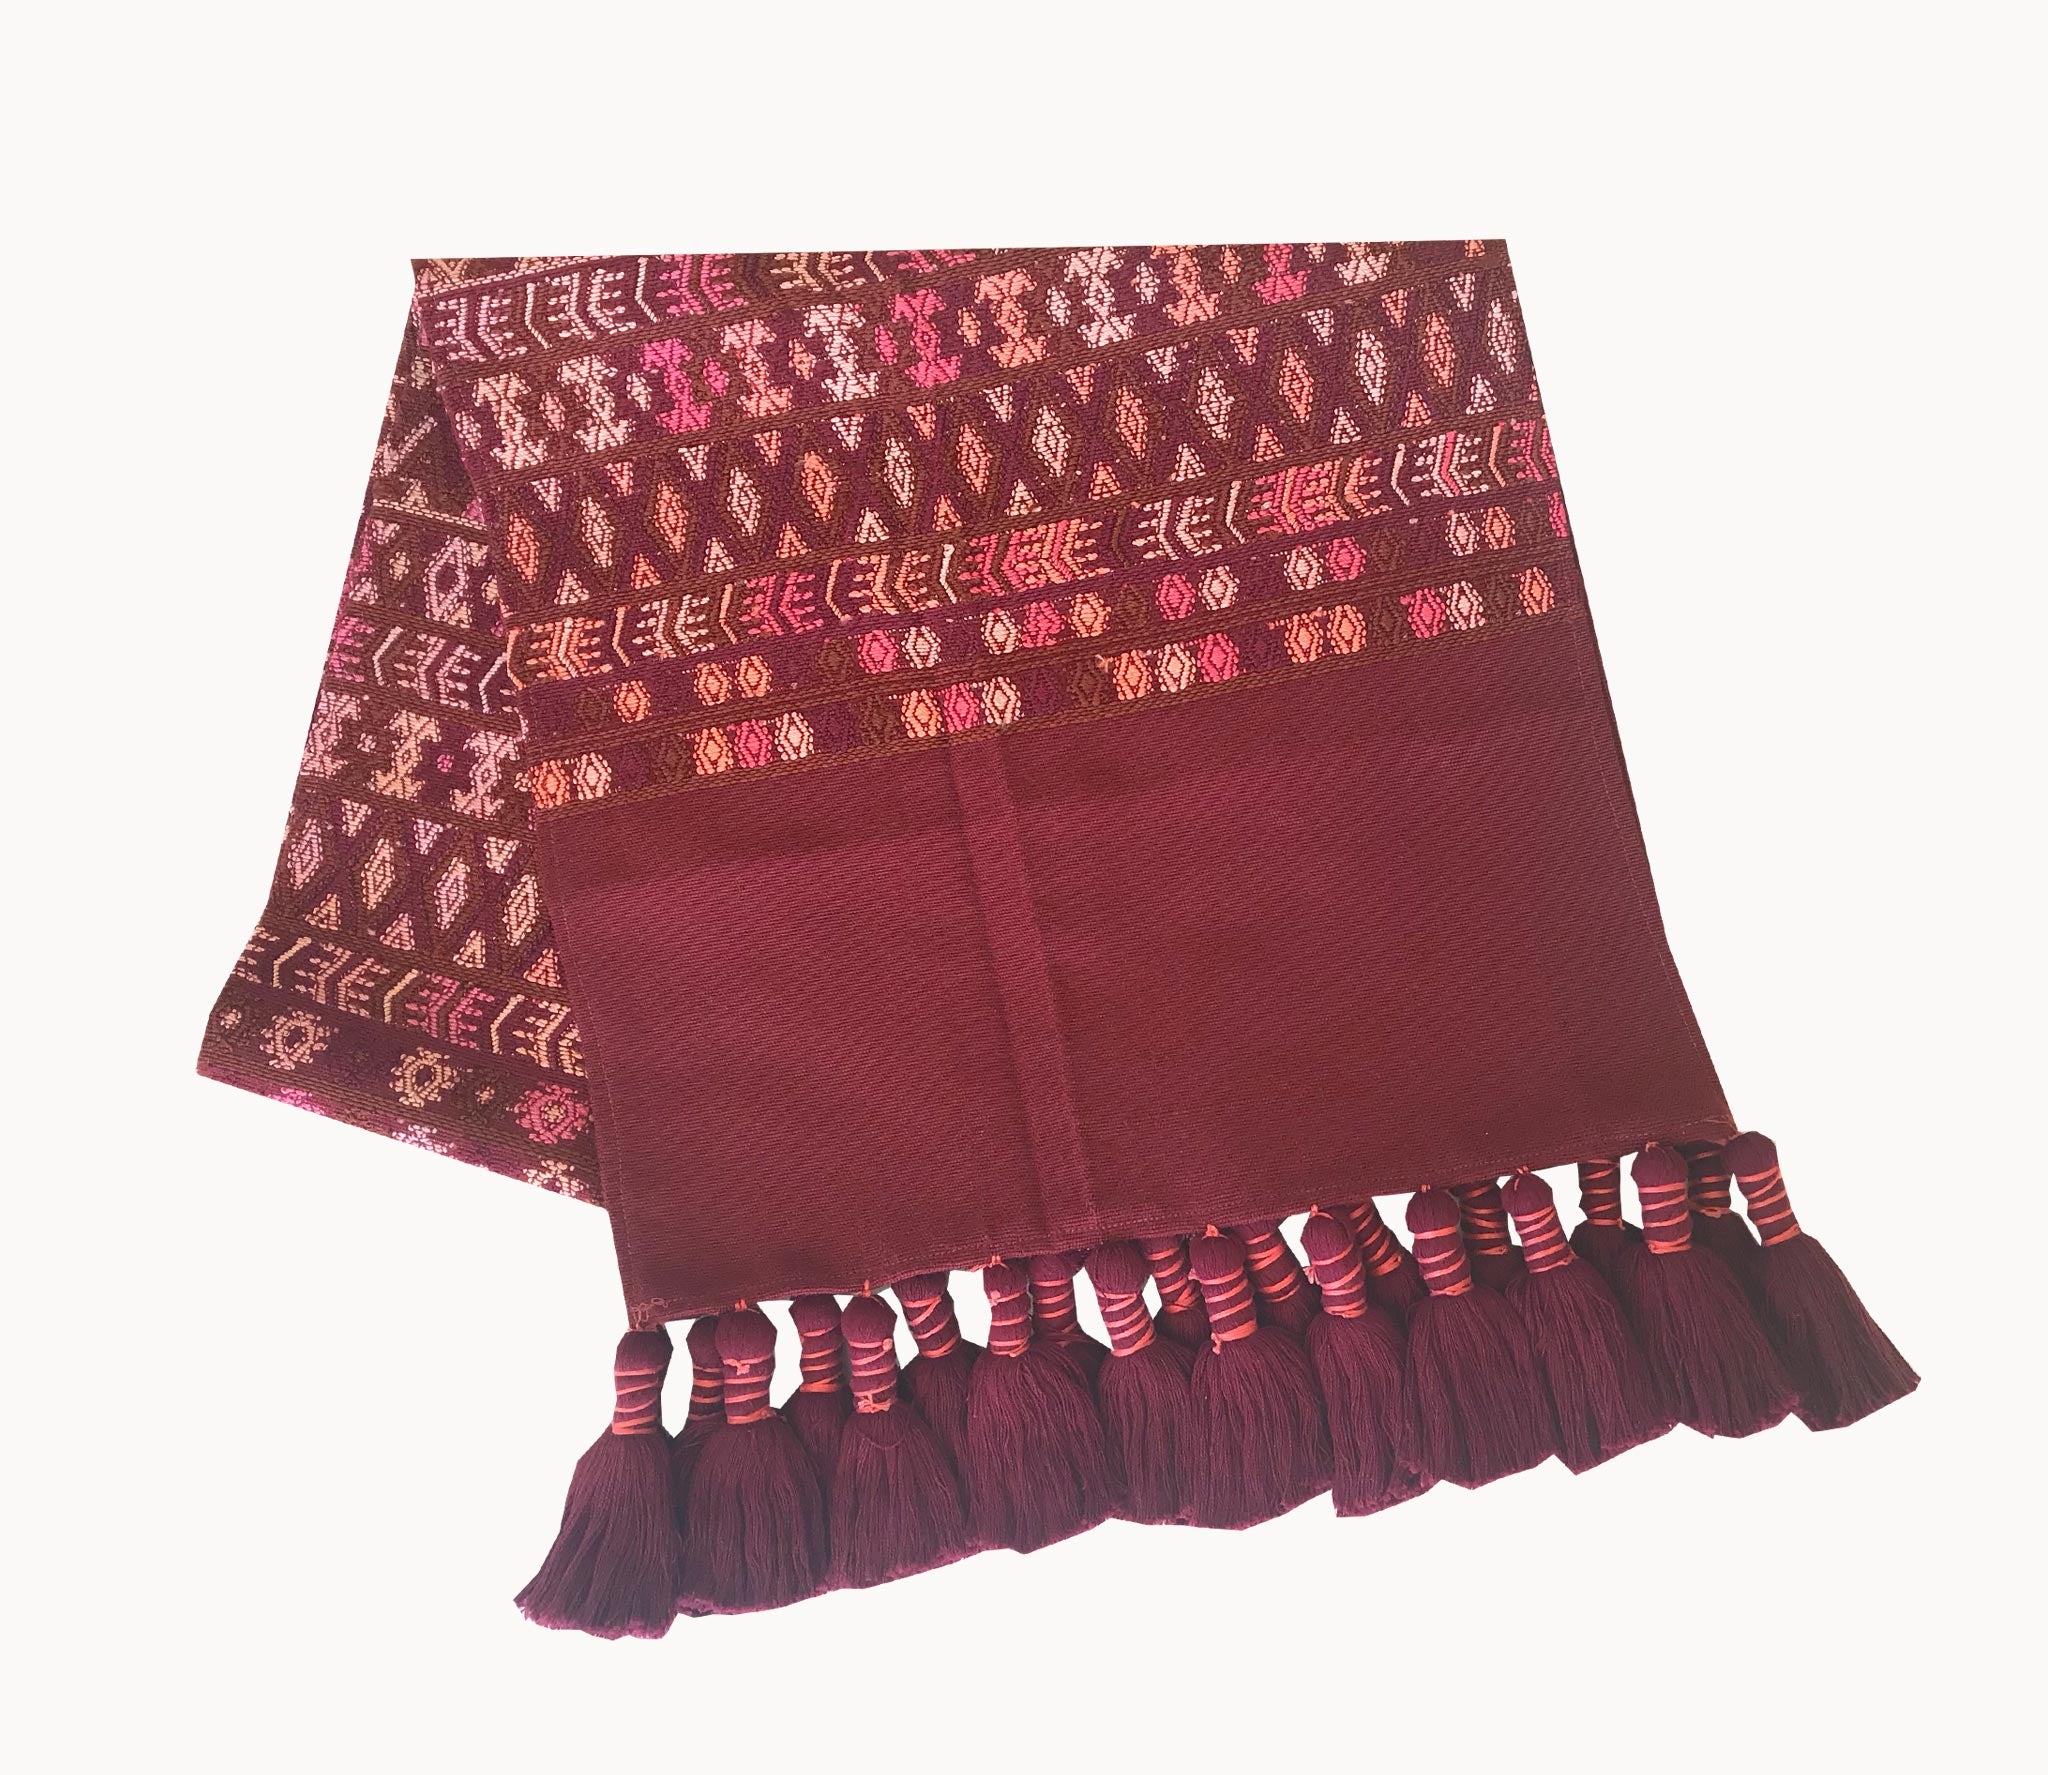 Guatemalan Textile, red table runner repurposed from a huipil from Santa Maria de Jesus 